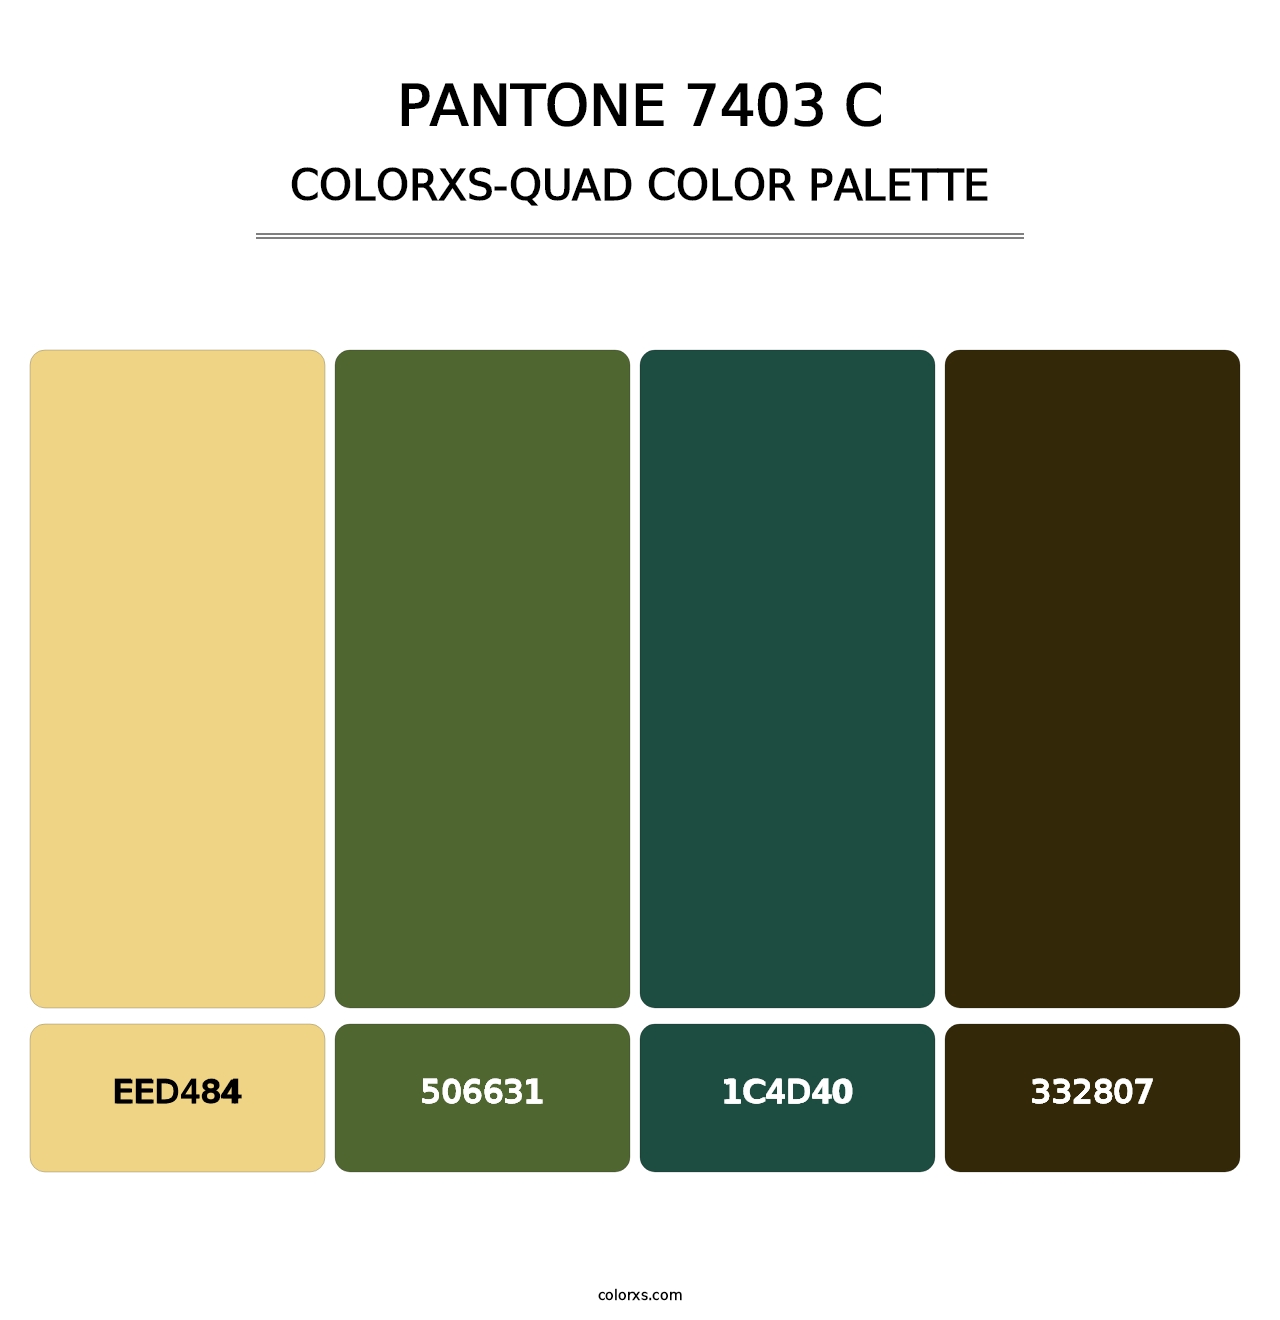 PANTONE 7403 C - Colorxs Quad Palette